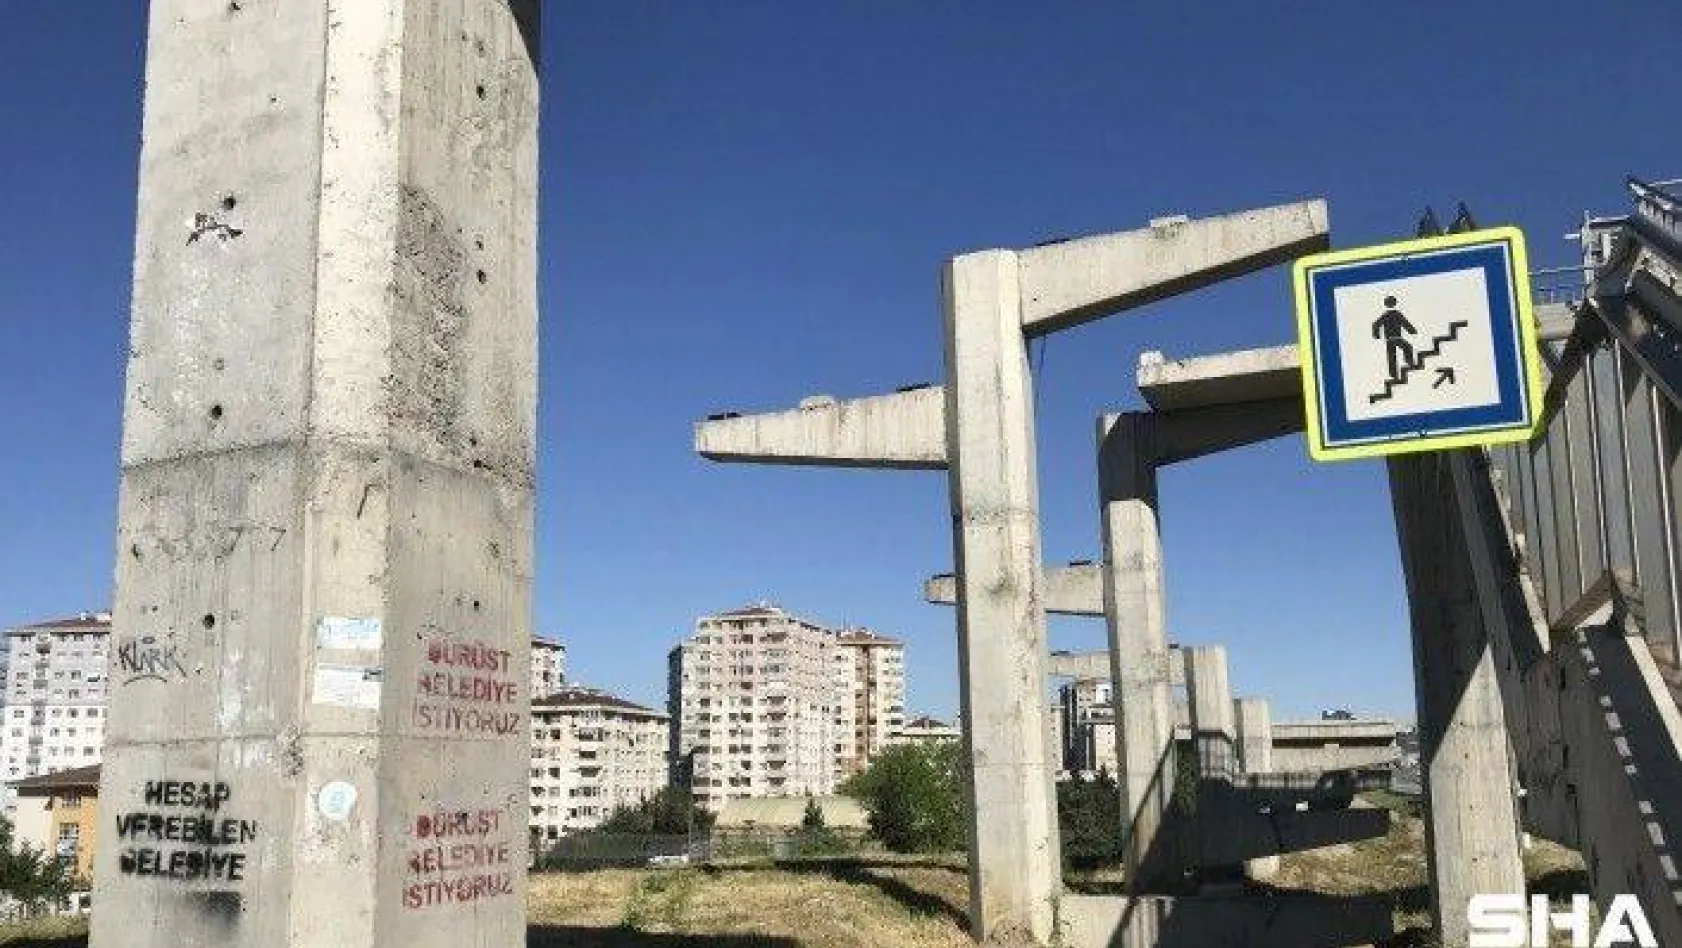 (Özel) İstanbul'da engelli rampası olmayan üst geçit için 'Dürüst belediye istiyoruz' tepkisi